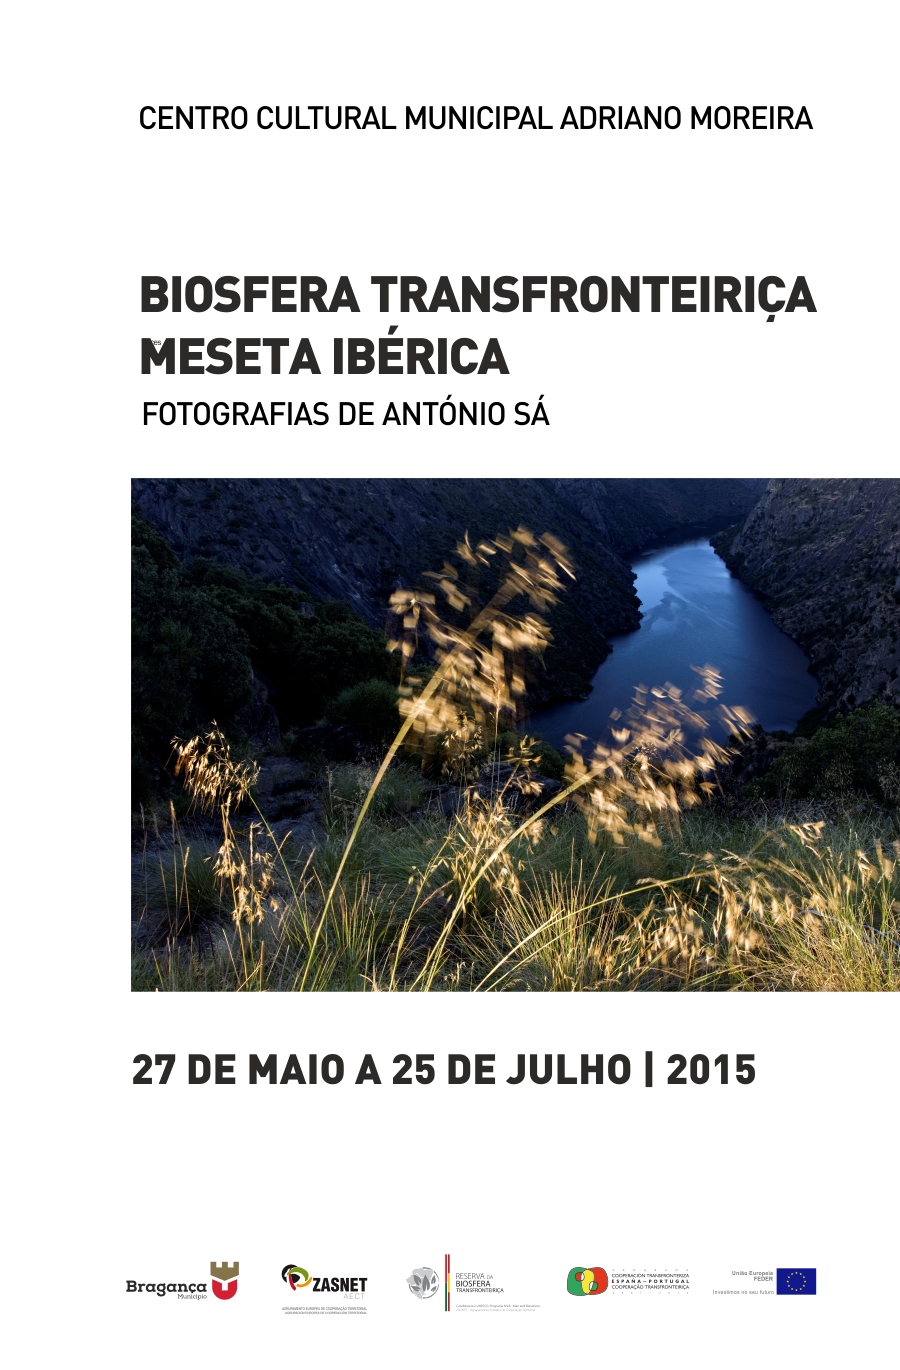 Exposição Fotográfica da Biosfera Transfronteiriça MESETA IBÉRICA - Fotografias de António Sá